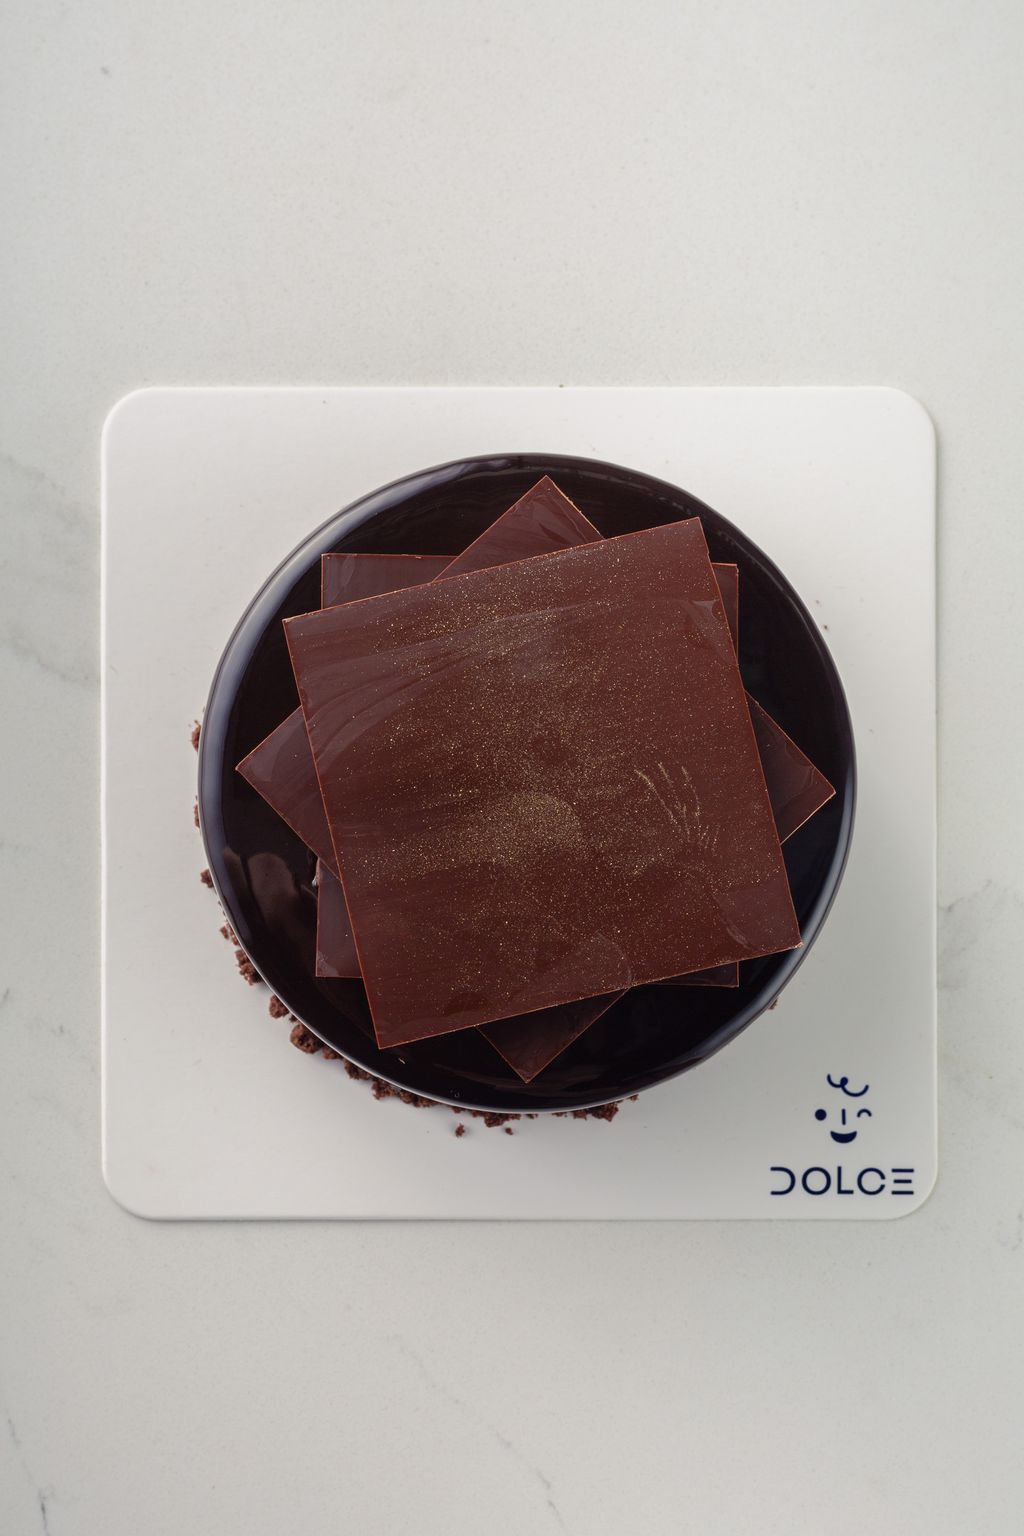 Dolce_Whole Cake-96